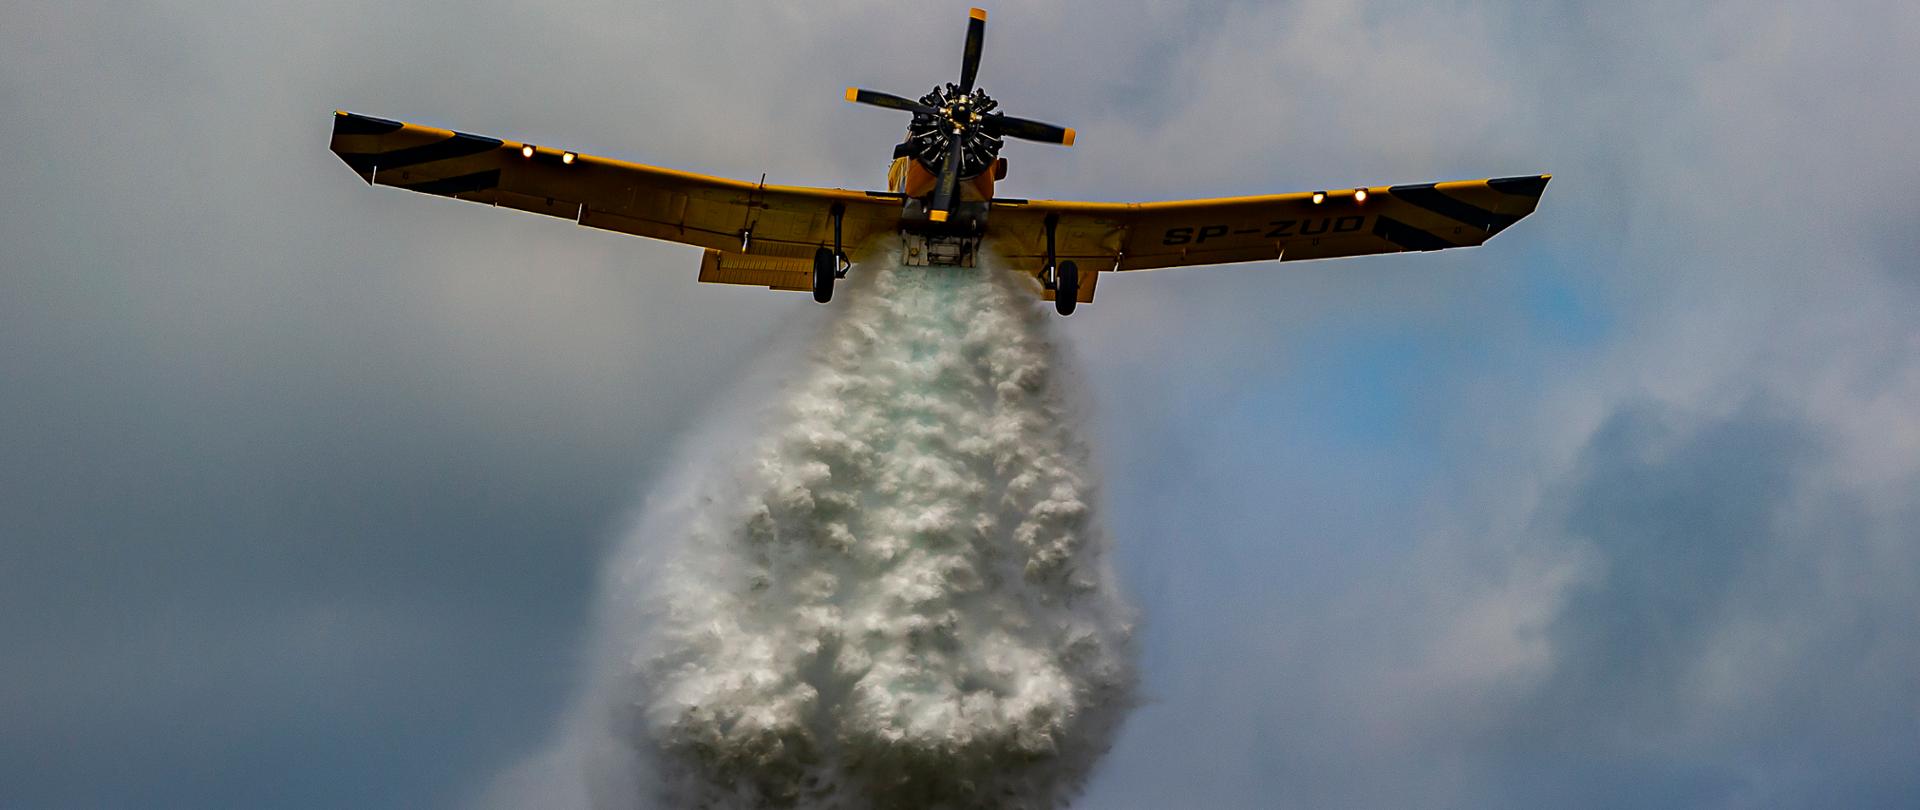 Samolot na niebie widziany od spodu podczas zrzucania wody